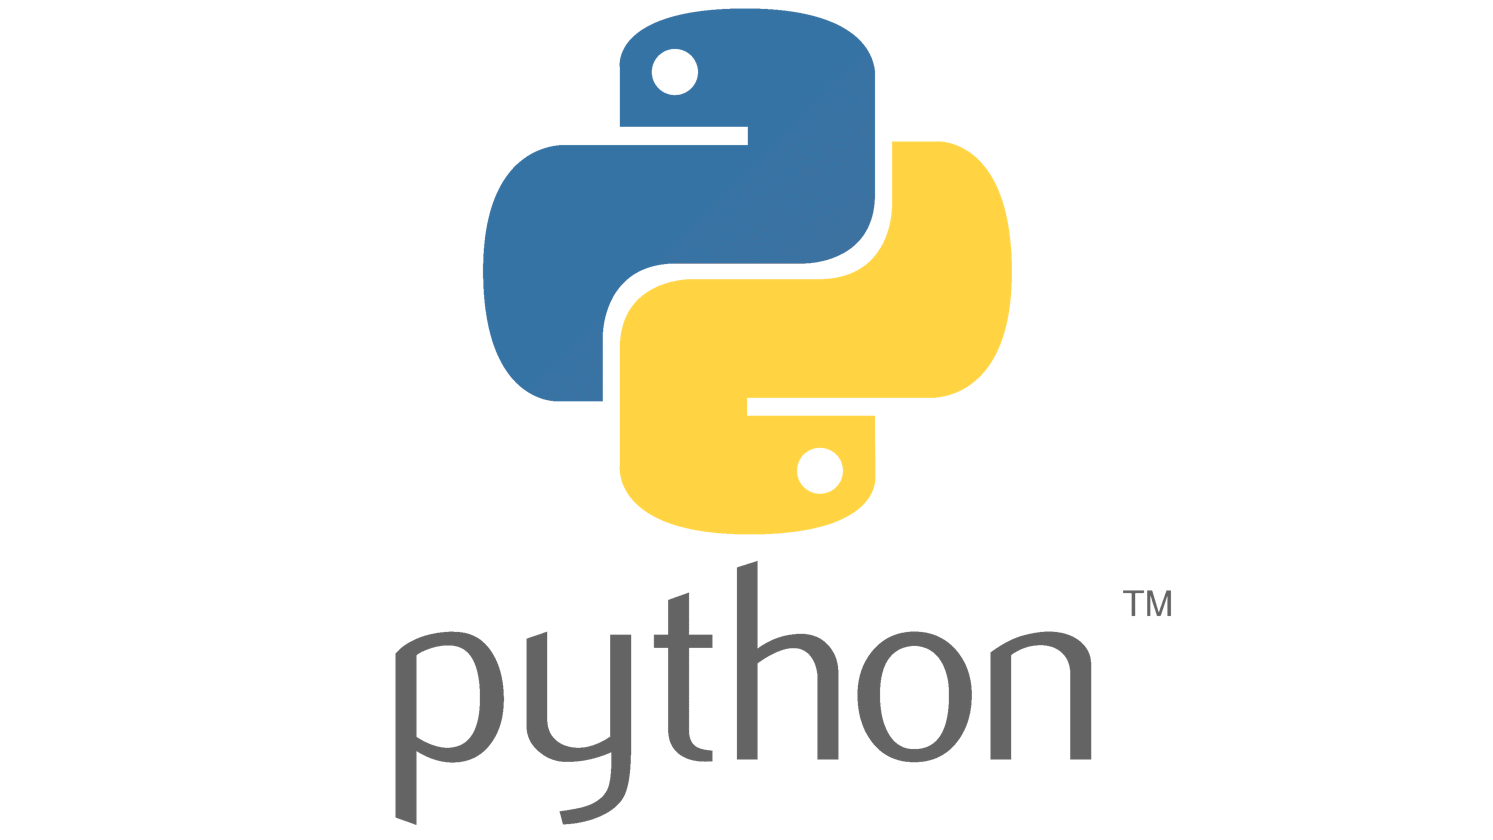 Day 13: Basics Of Python